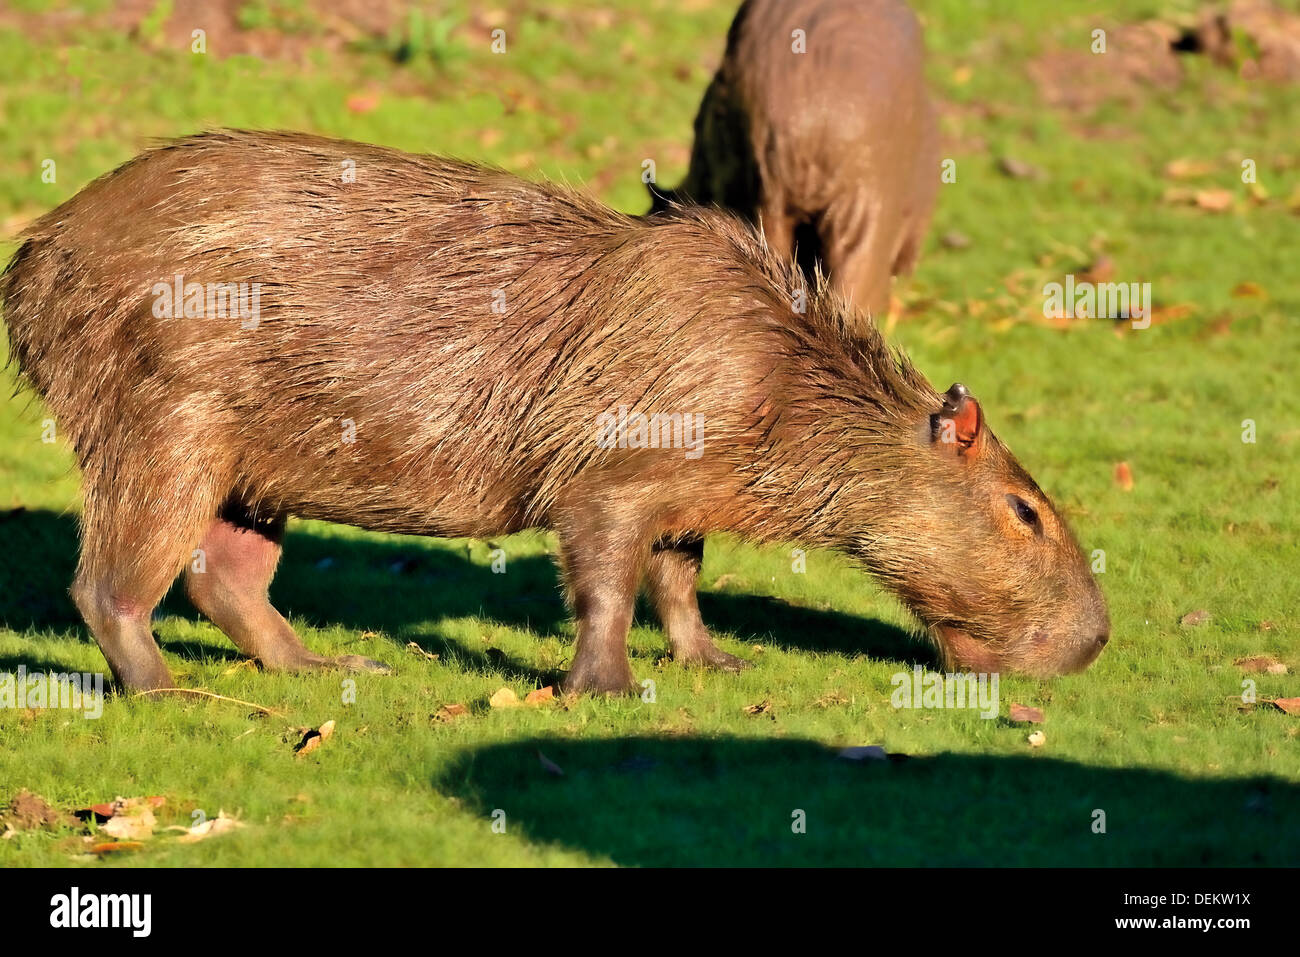 Brasil, el Pantanal: capibaras (Hydrochoerus hydrochaeris) son vegetarianos y les gusta comer hierba Foto de stock